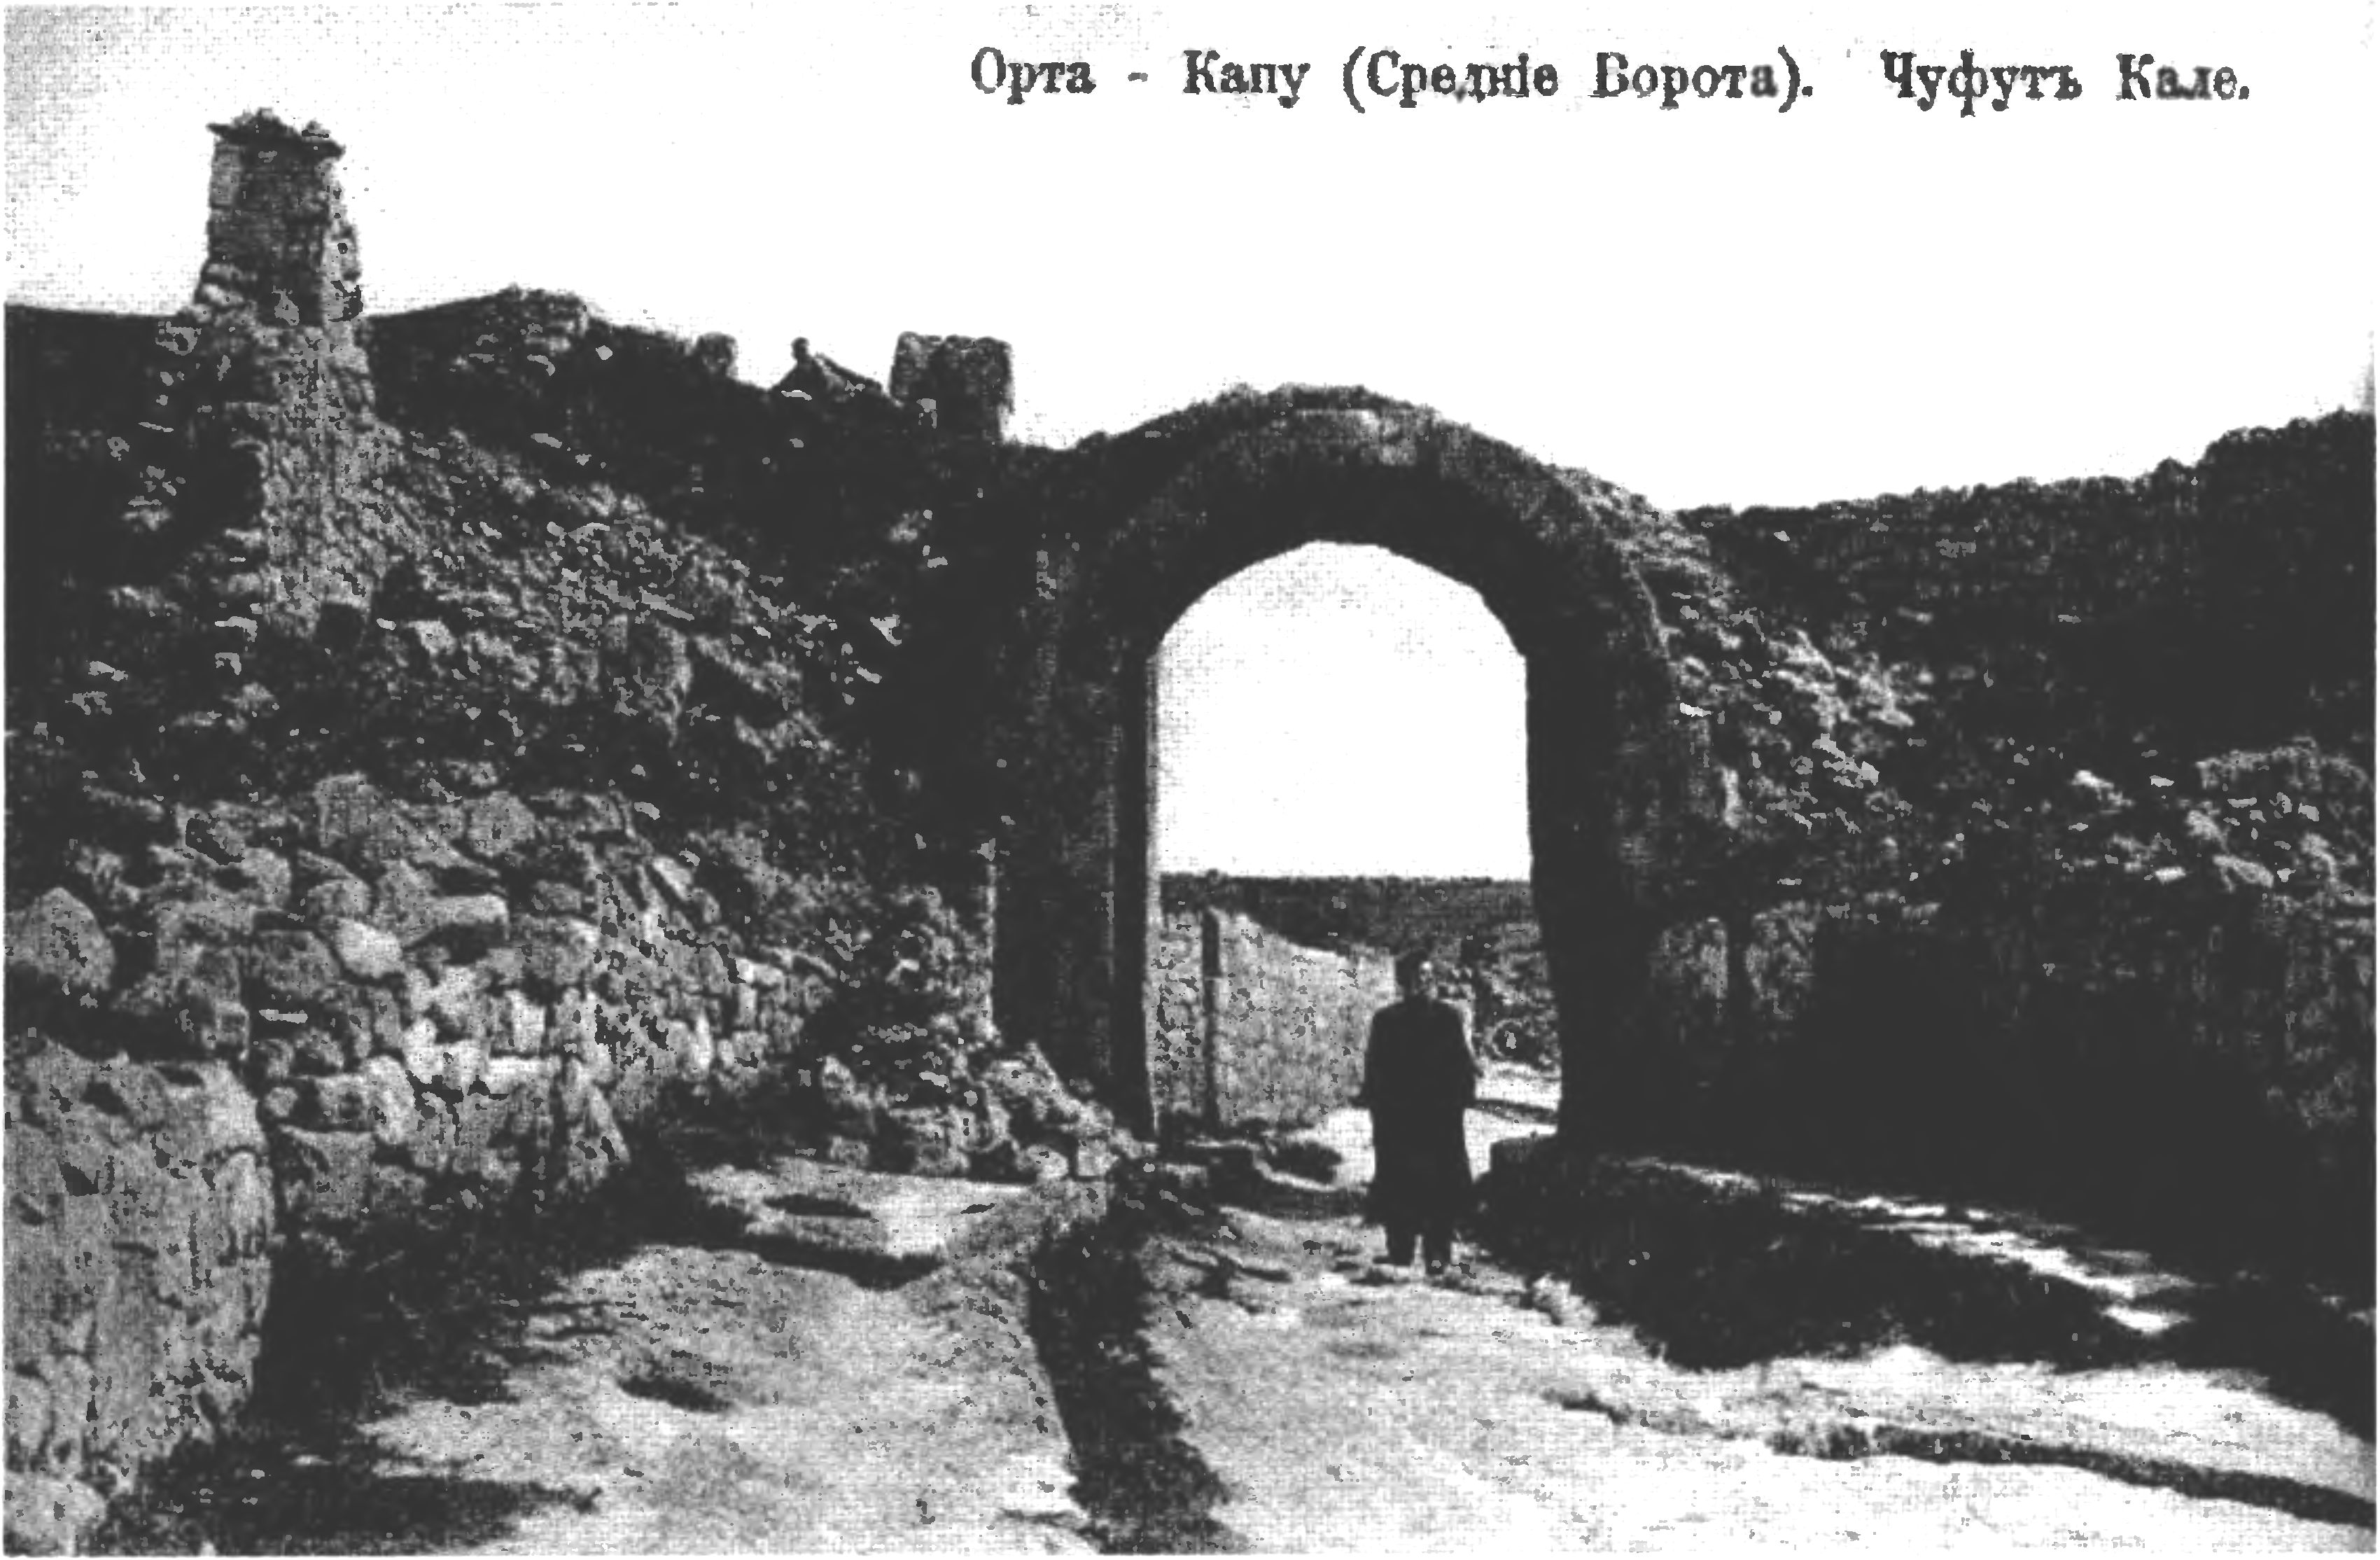 Чуфут-Кале: Средние ворота (Орта-Капу) (открытка начала XX века)